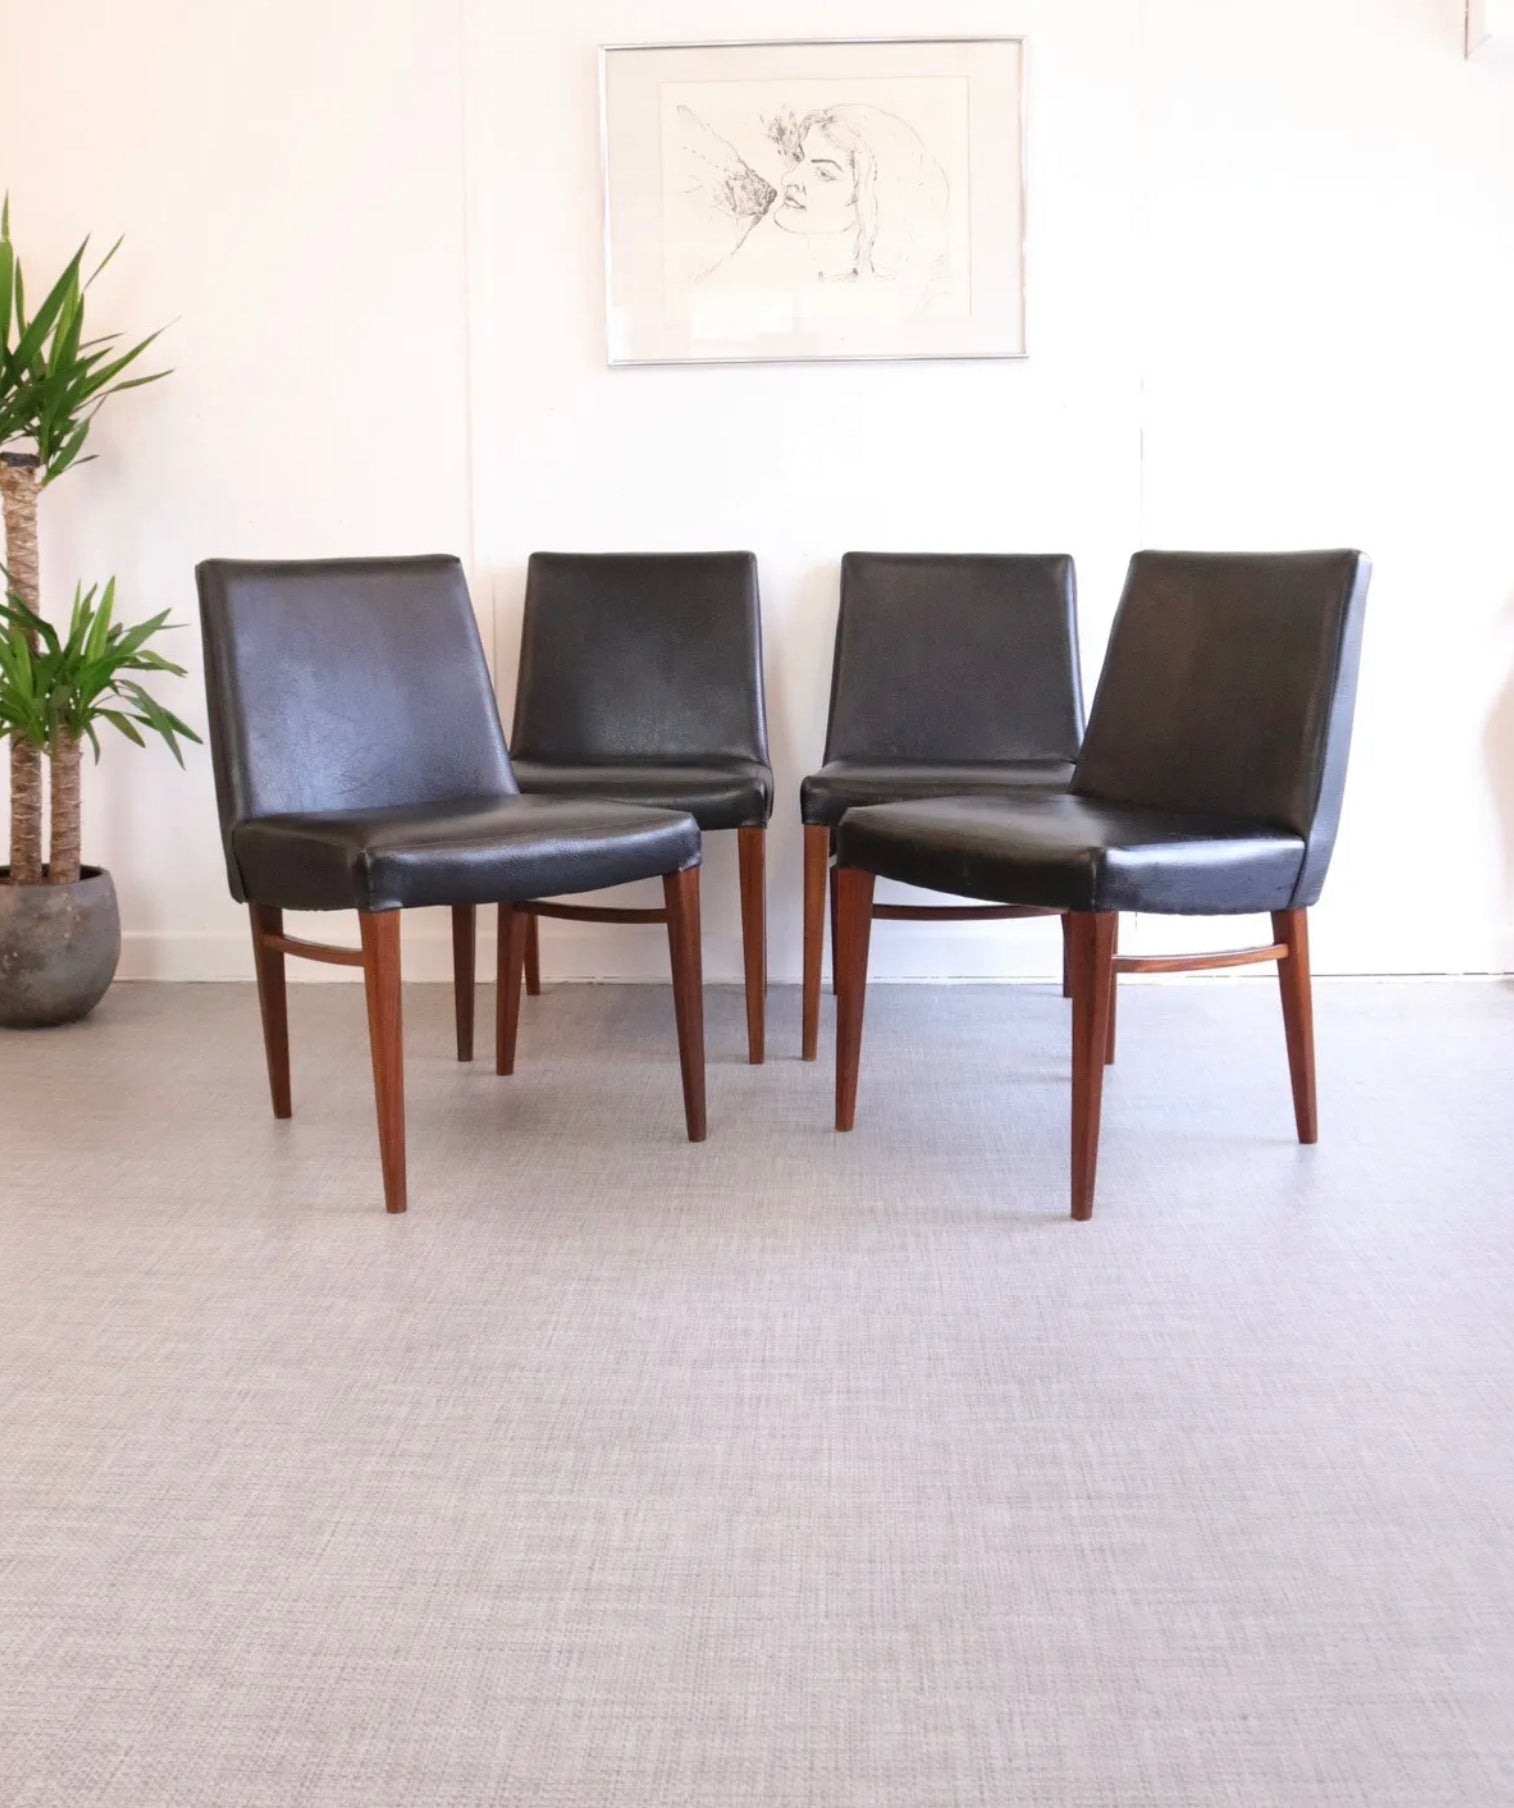 4 x G Plan Kofod Larsen Danish Teak Dining Chairs - teakyfinders